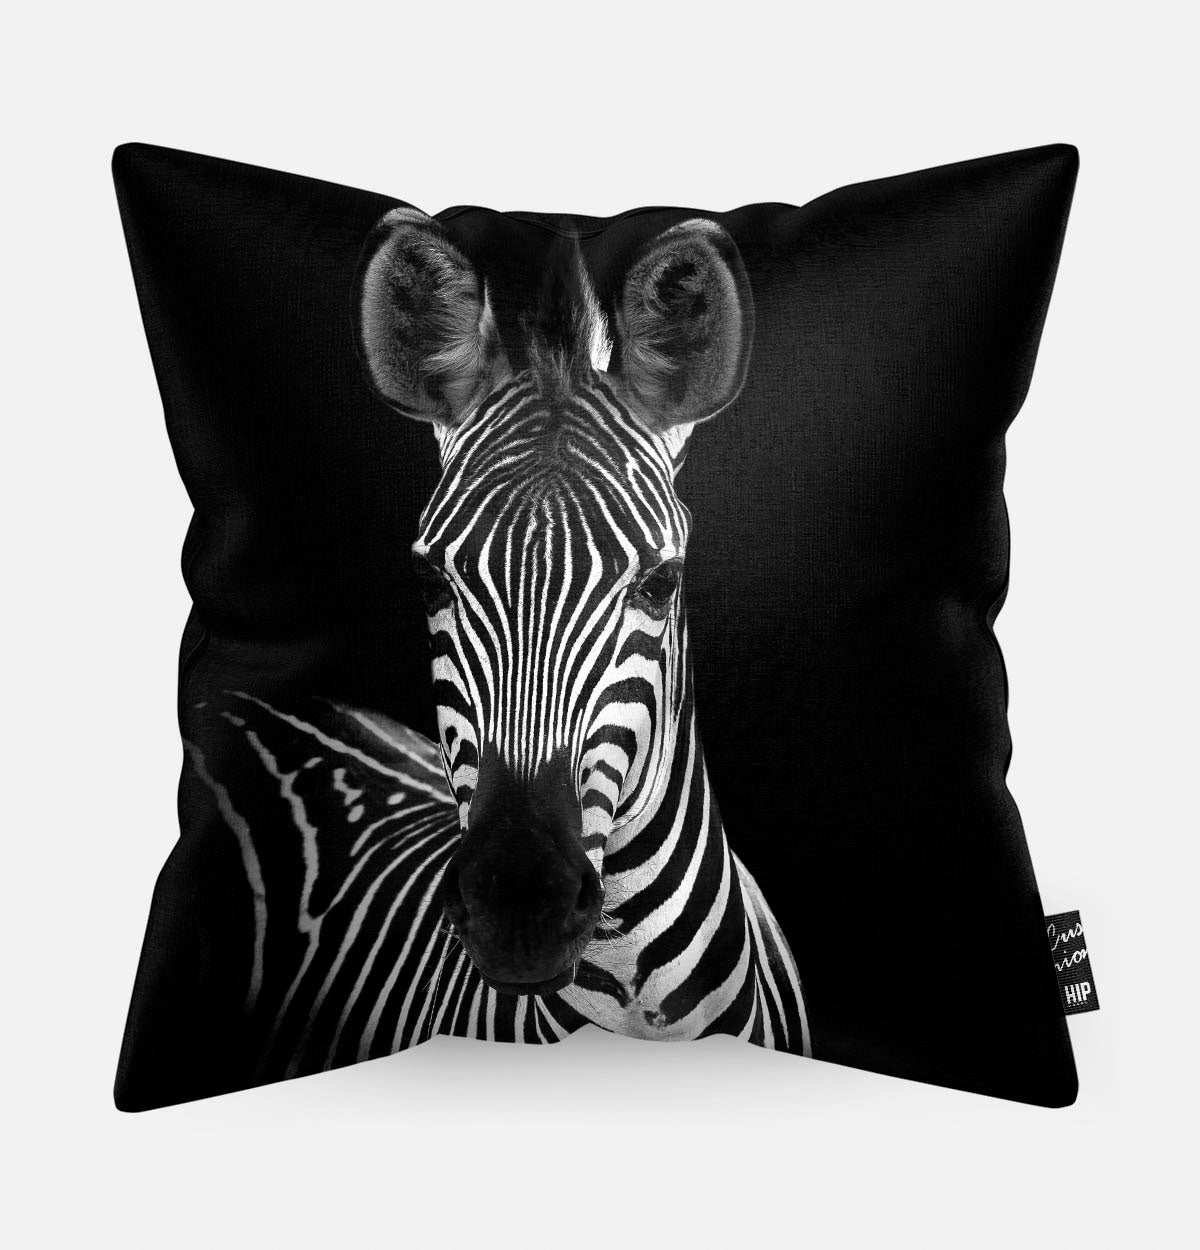 Kussen met een zebra in zwart-wit erop afgebeeld.